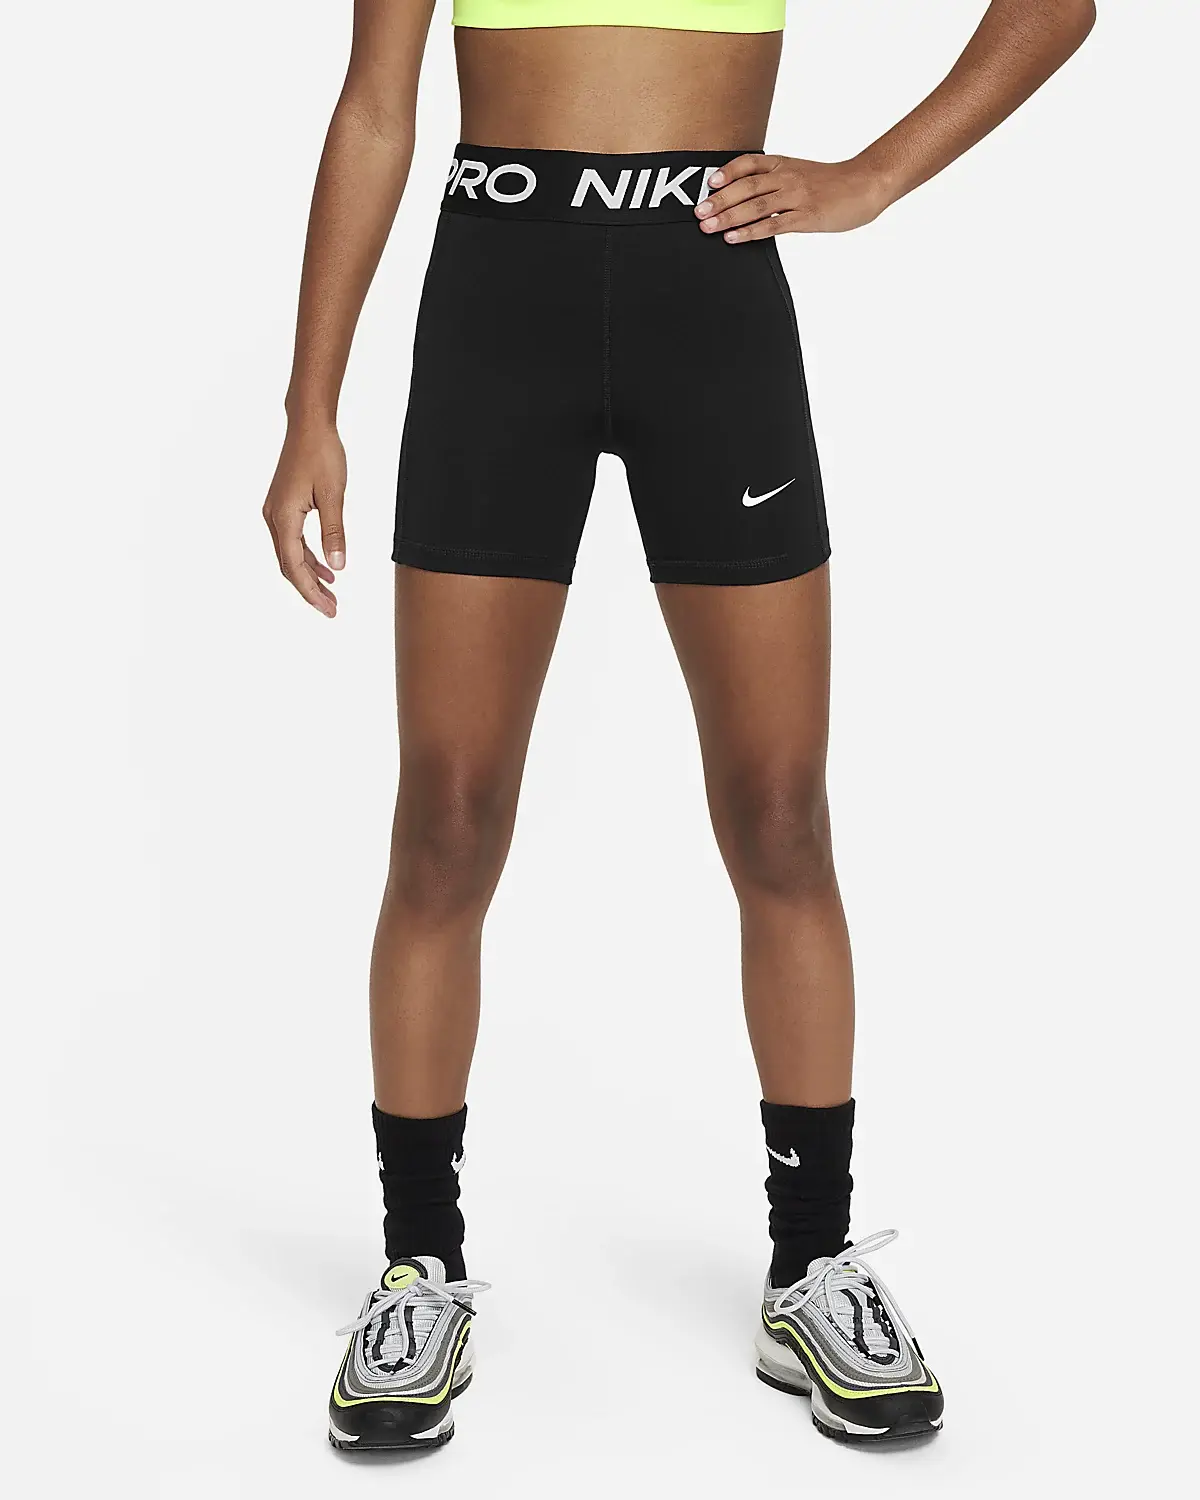 Nike Pro pour protéger des fuites. 1